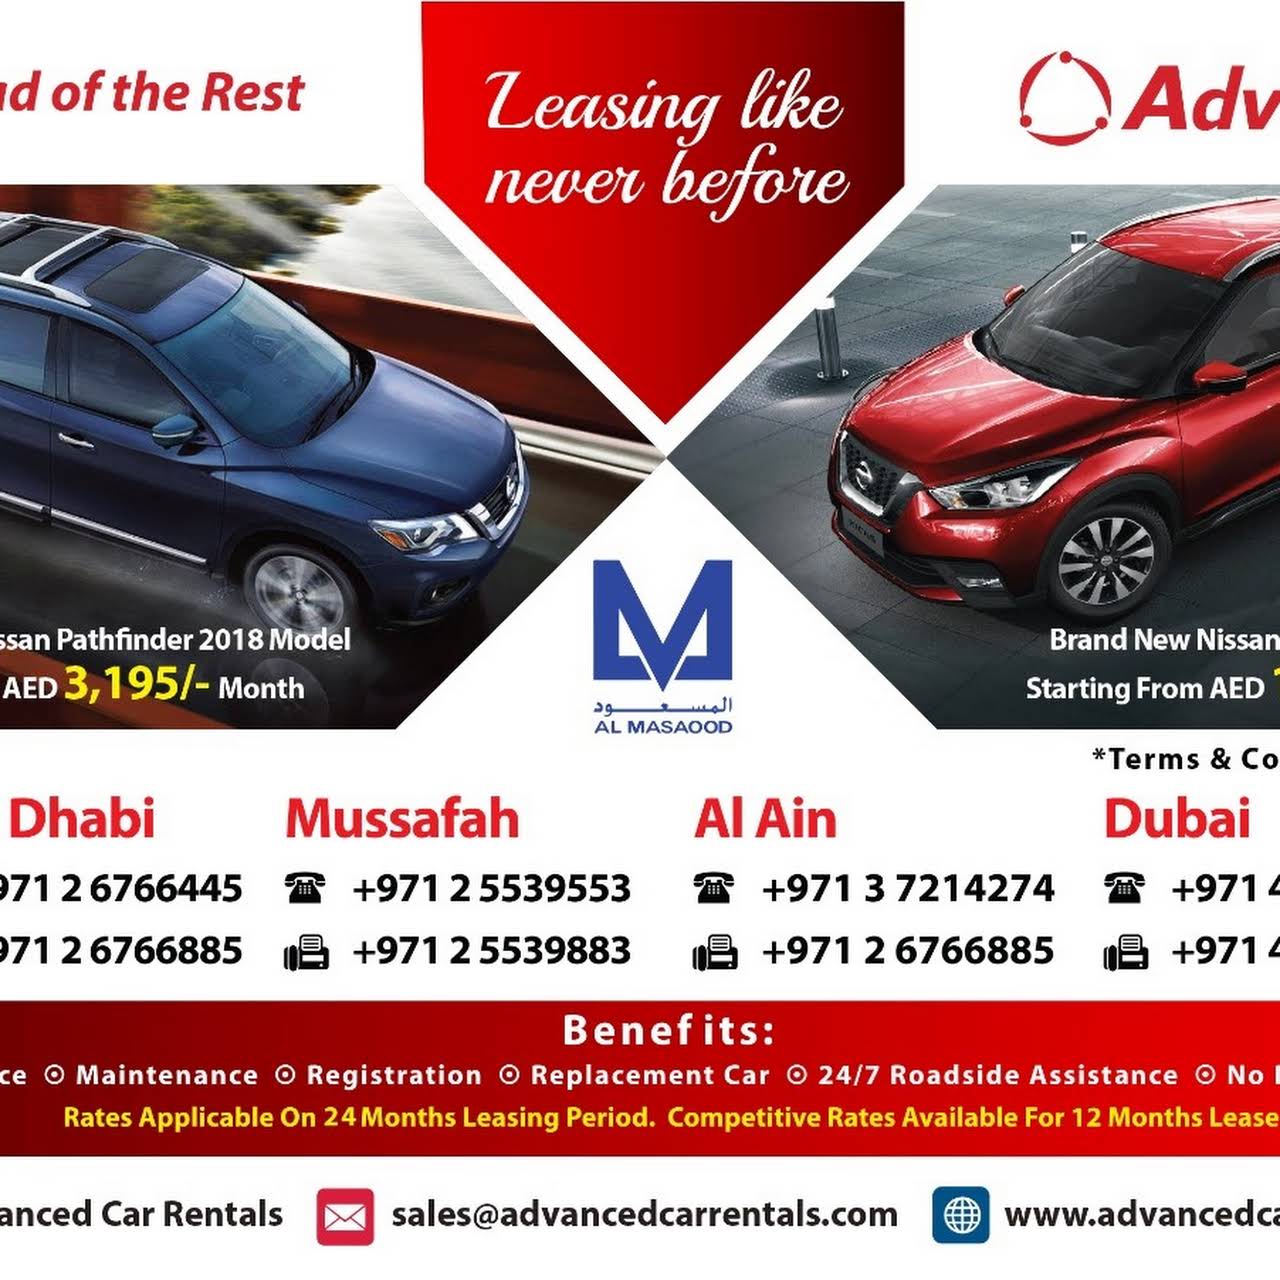 Advanced Car Rentals Abu Dhabi - Car Rental Agency in UAE